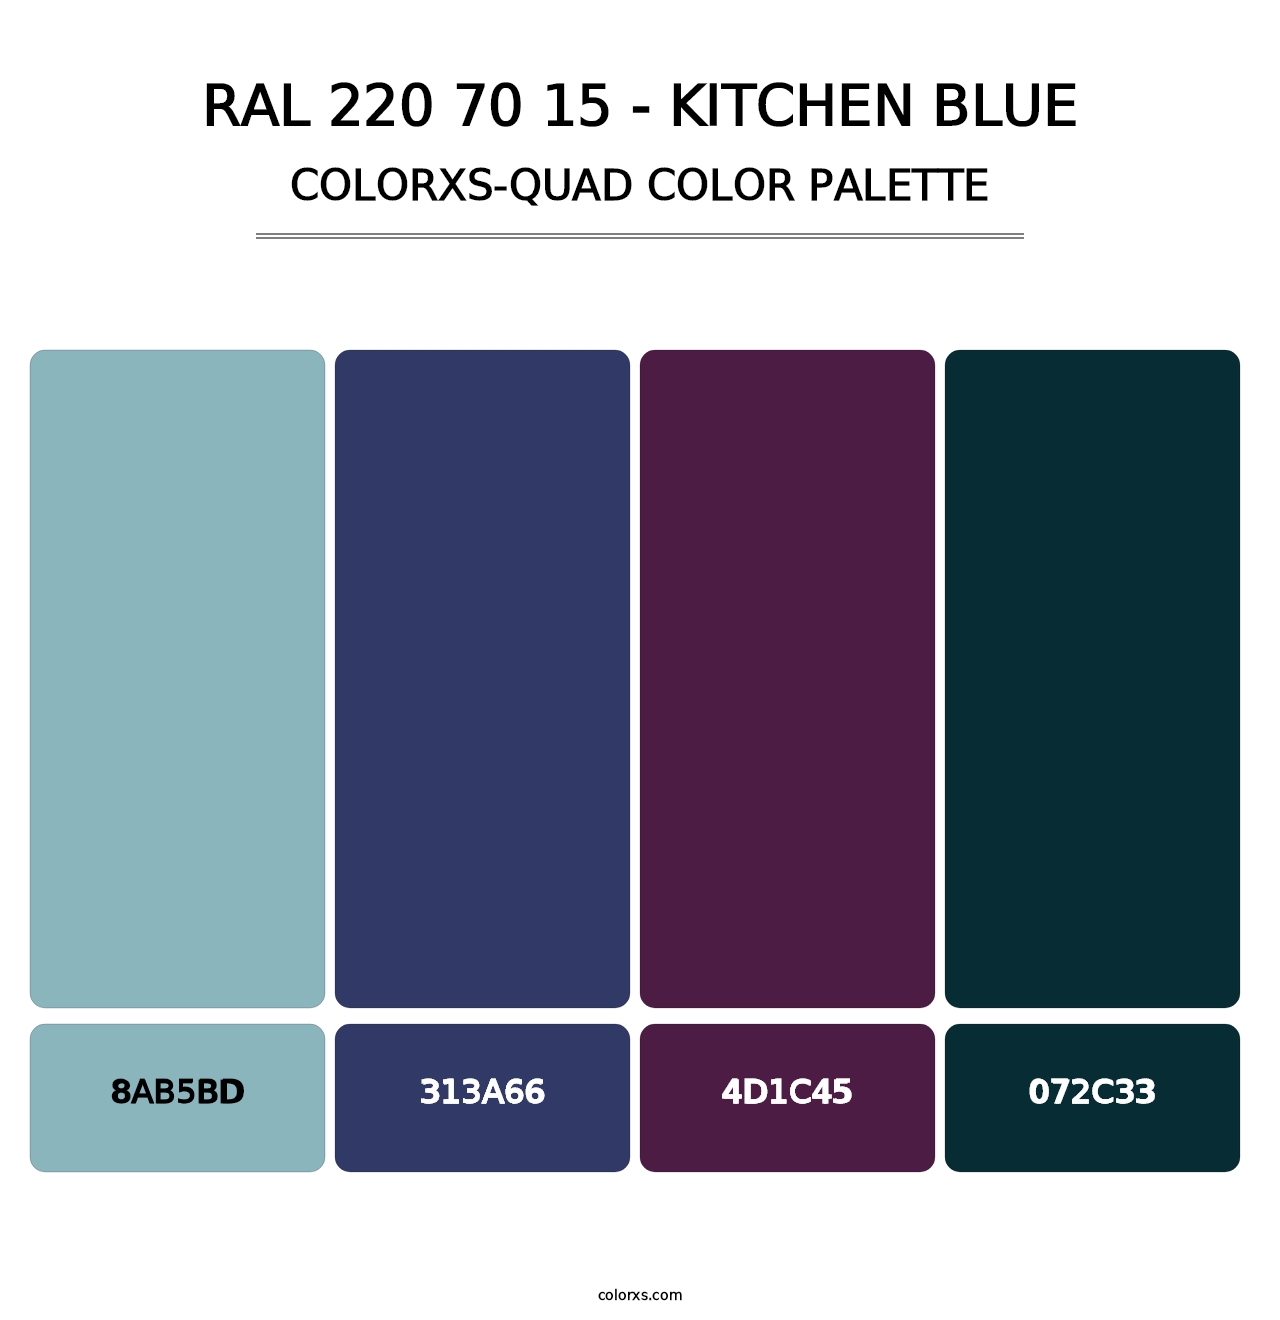 RAL 220 70 15 - Kitchen Blue - Colorxs Quad Palette